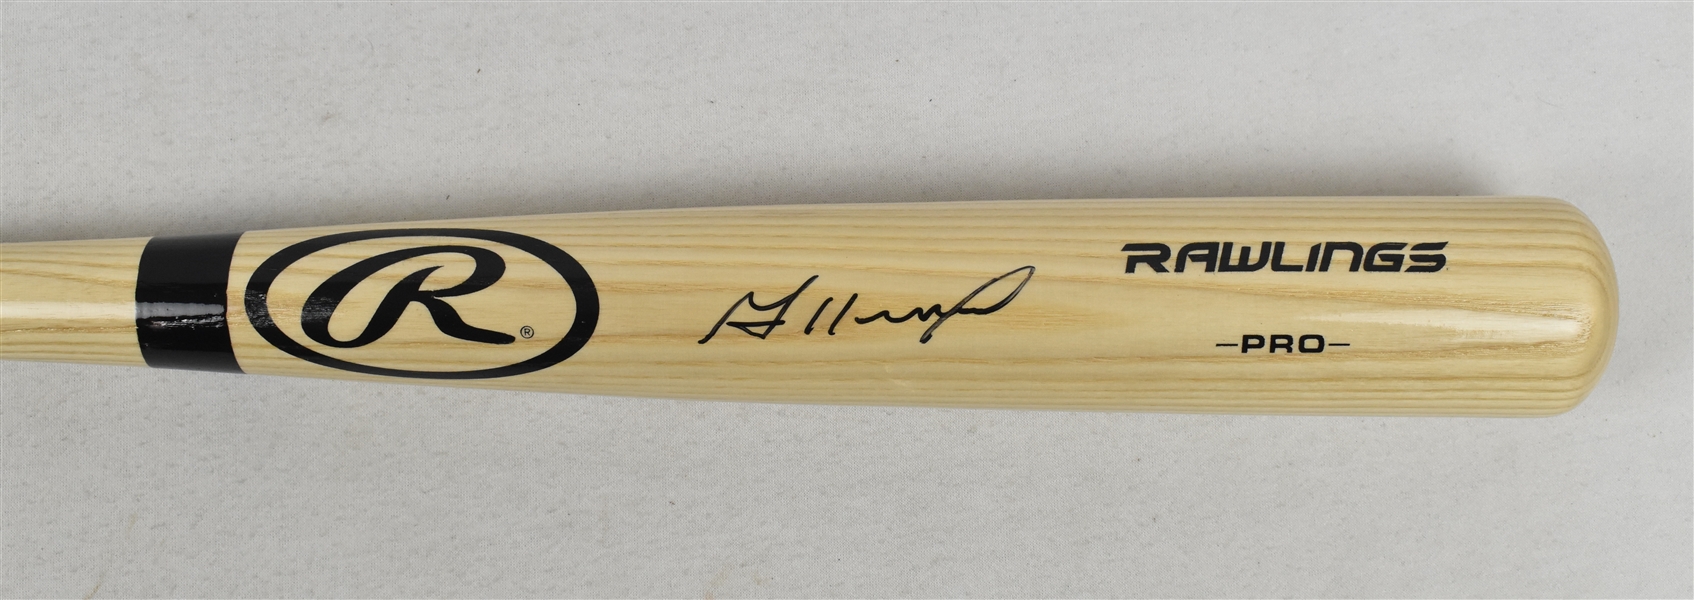 Jose Altuve Autographed Bat